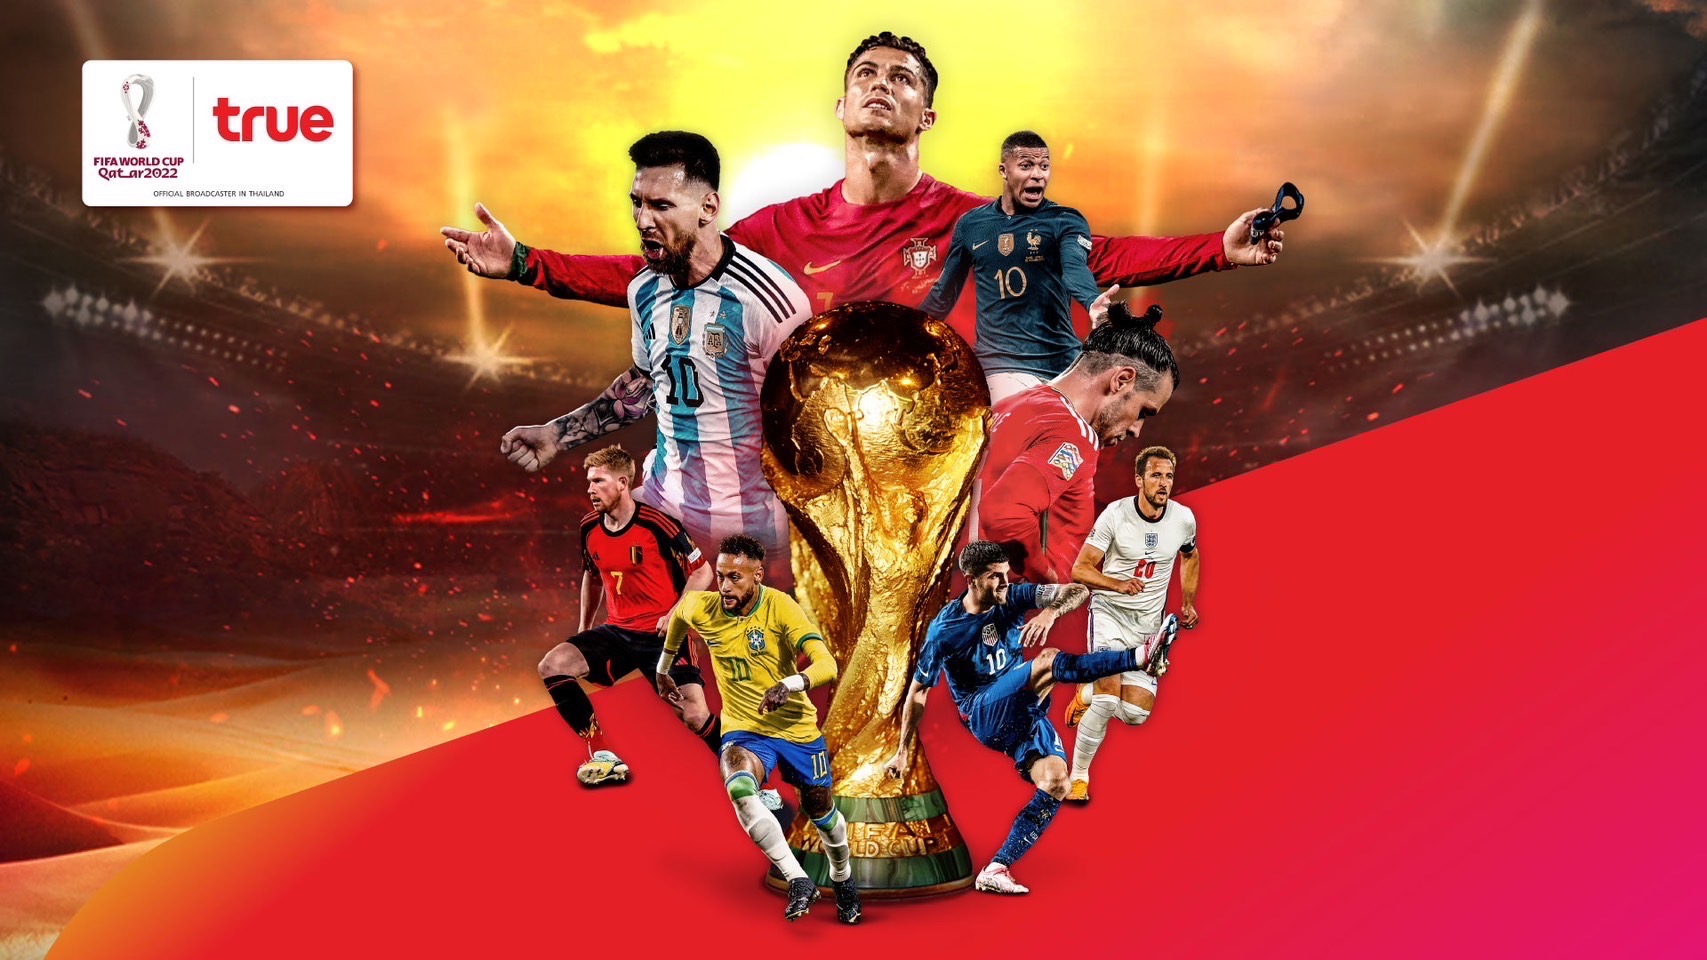 ด่วน ศาลทรัพย์สินทางปัญญาฯ ออกคำสั่งห้ามไม่ให้SBN ผู้ให้บริการ AIS PLAYBOX ถ่ายทอดการแข่งขันฟุตบอลโลก (World Cup Final 2022) ผ่านโครงข่าย IPTVเพื่อให้เป็นไปตามกฎหมายลิขสิทธิ์ทันที